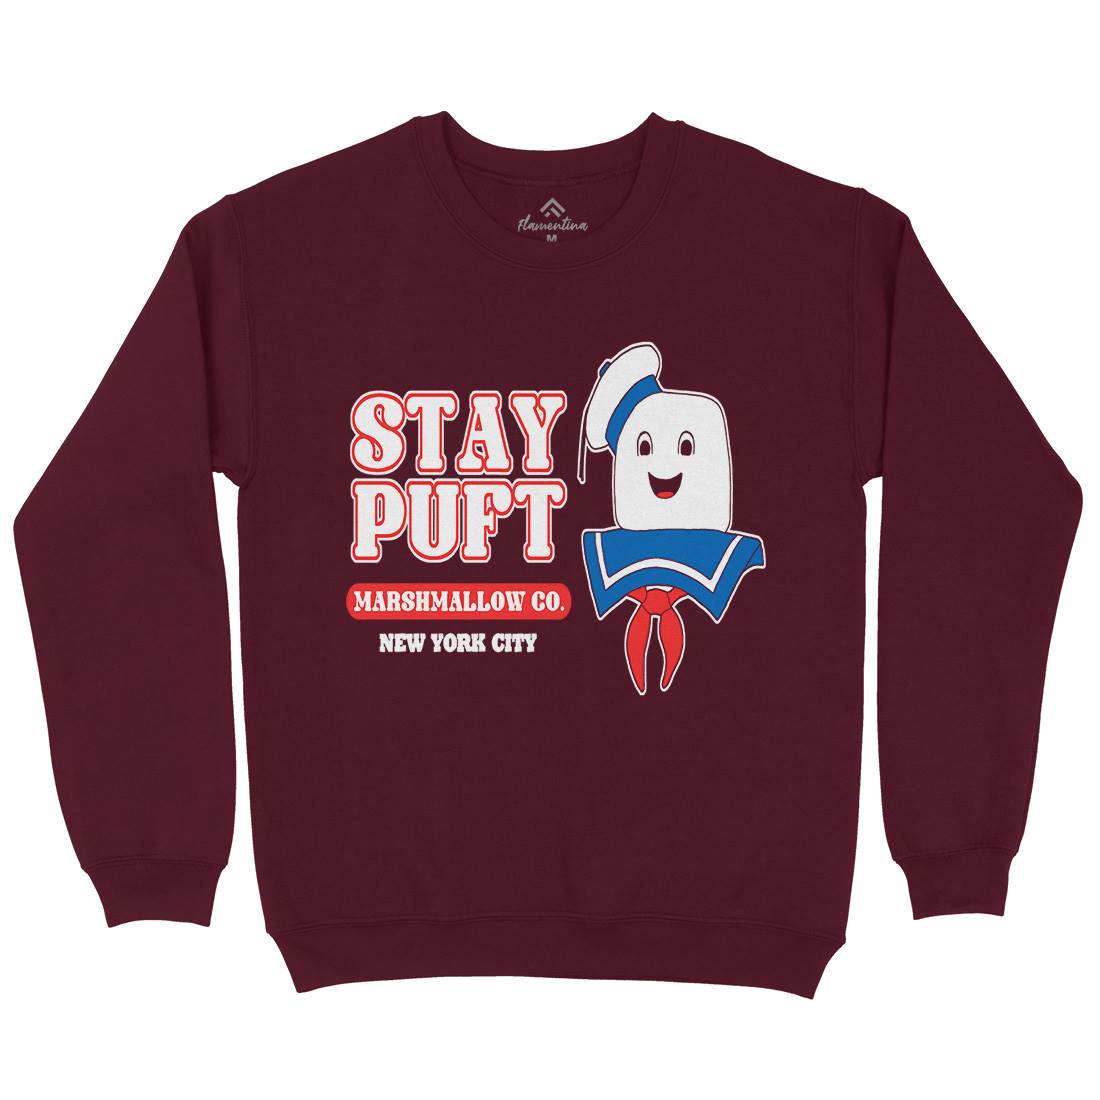 Stay Puft Co Kids Crew Neck Sweatshirt Space D141